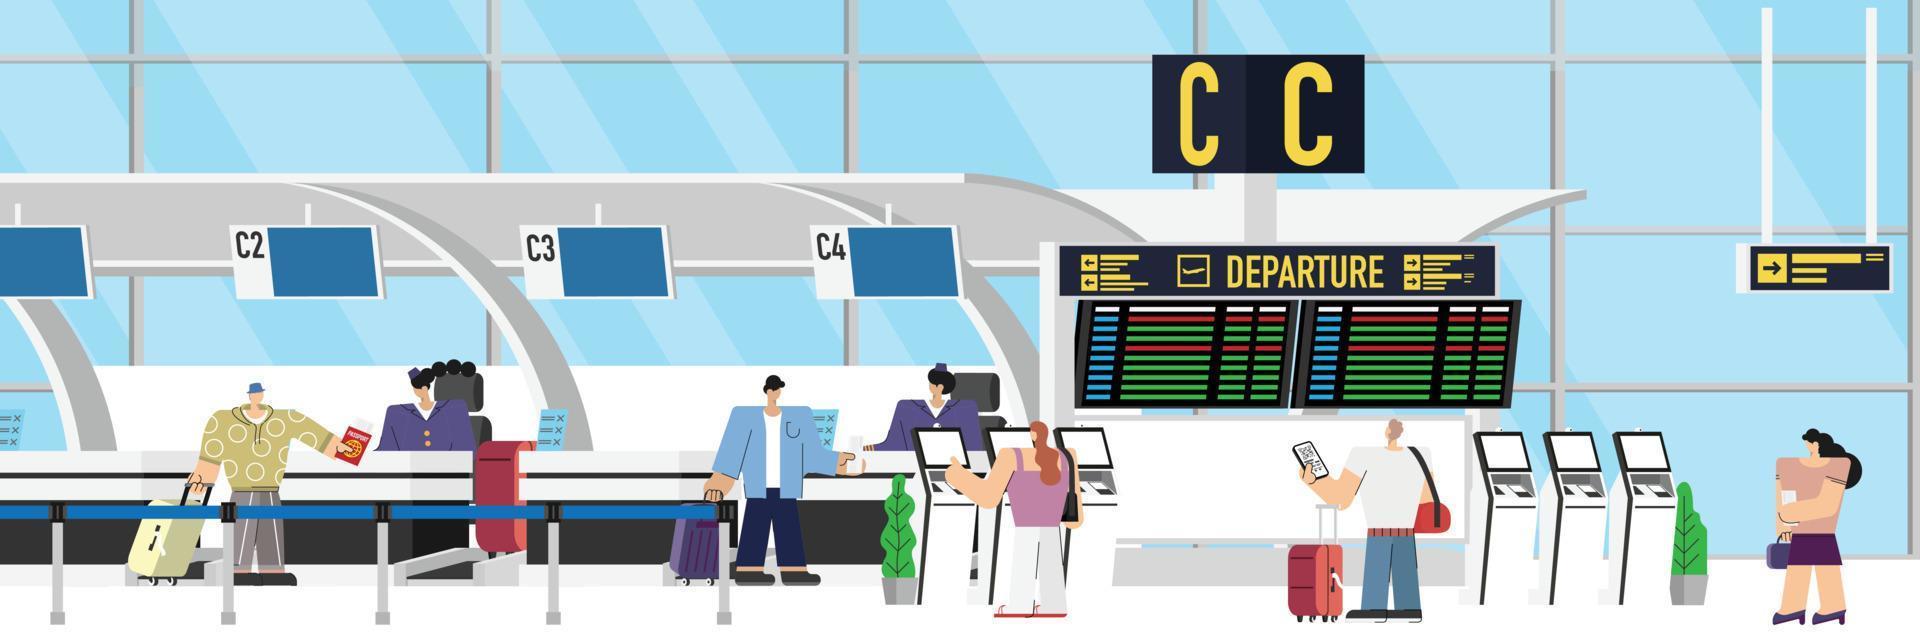 hall de embarque do aeroporto com registro de voo de check-in de passageiros com bagagem na fila, balcão de check-in para embarque de partida de avião, ilustração vetorial de aeronaves de viajantes vetor